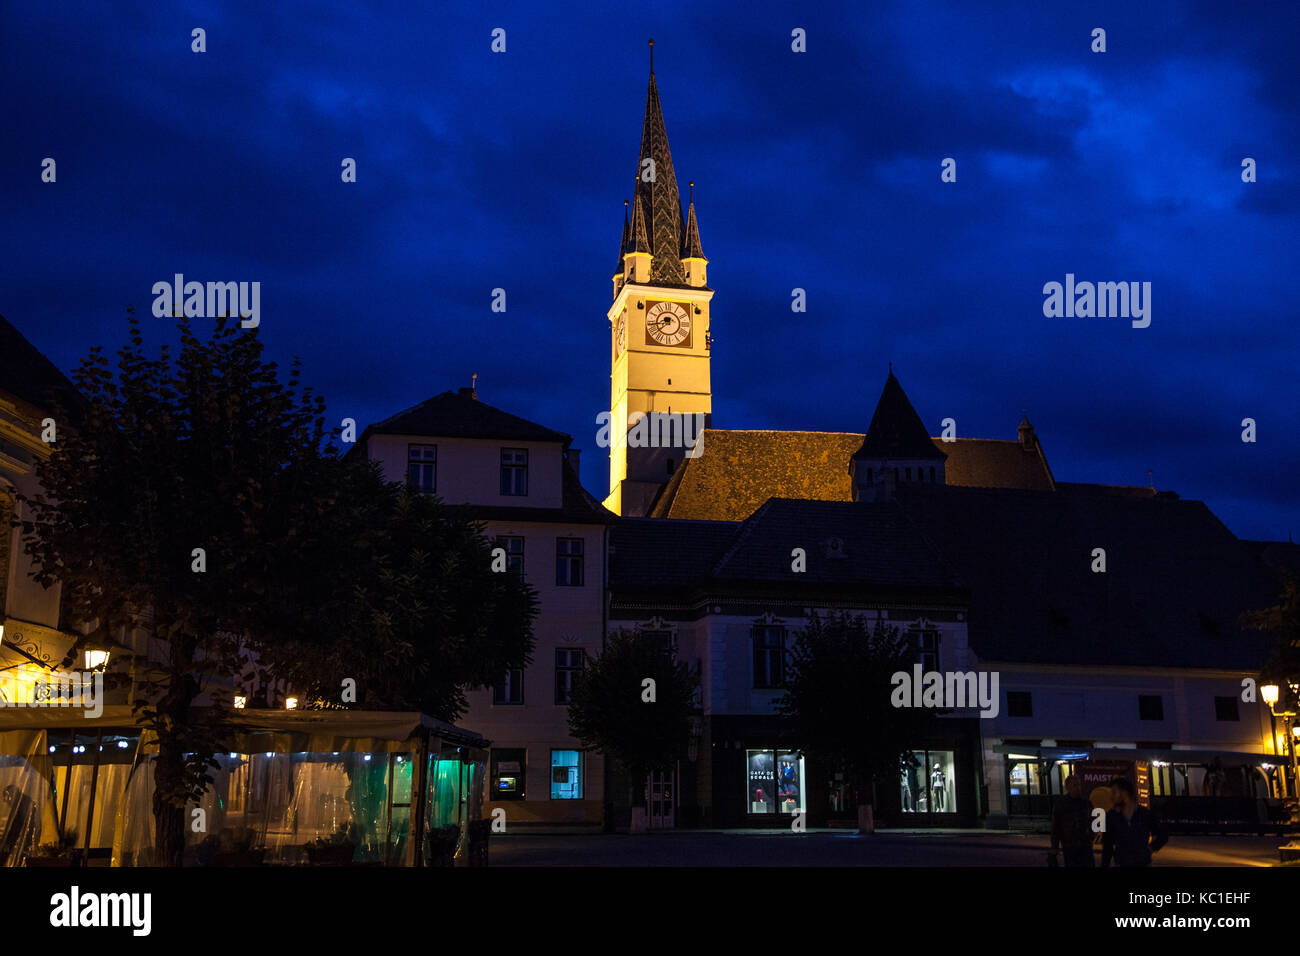 MEDIAS, Rumänien - 22. SEPTEMBER 2017: Saint Margaret (Sf. Margareta) Kirche am Abend vom Hauptplatz von Medias, einer der wichtigsten Städte gesehen Stockfoto